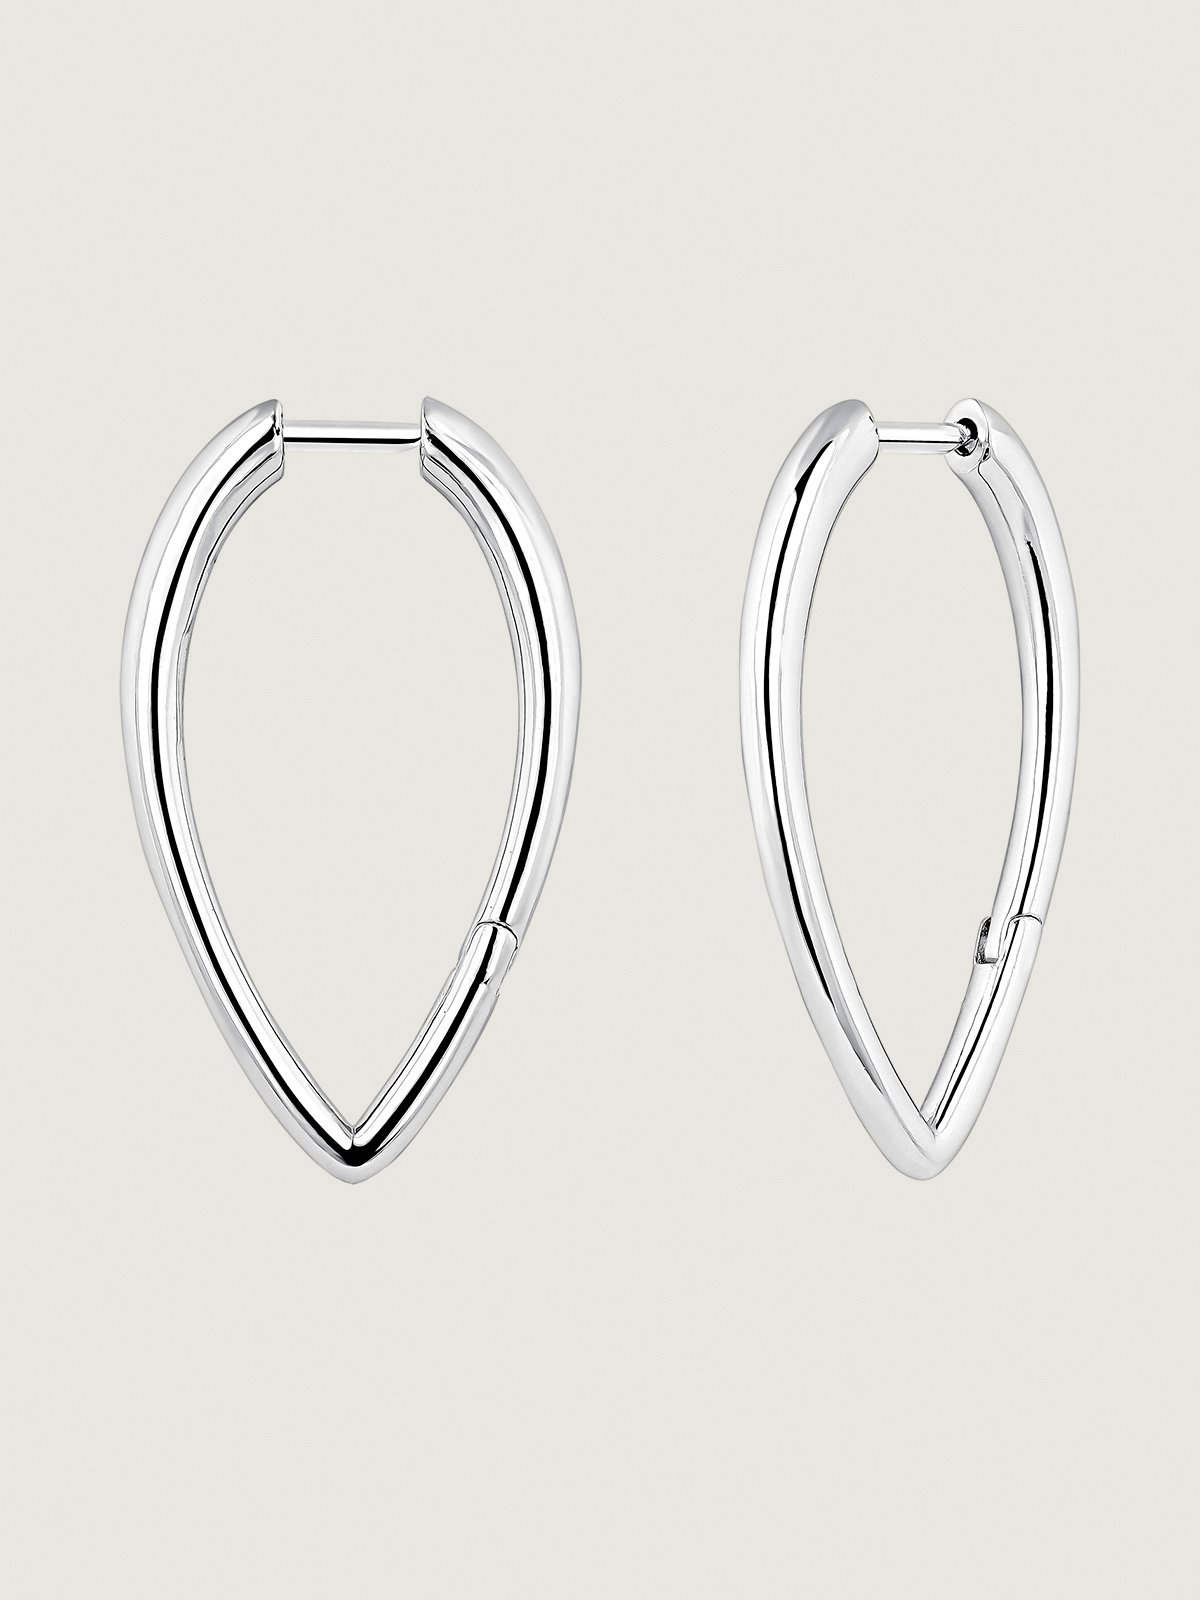 Large 925 silver hoop earrings in drop shape.